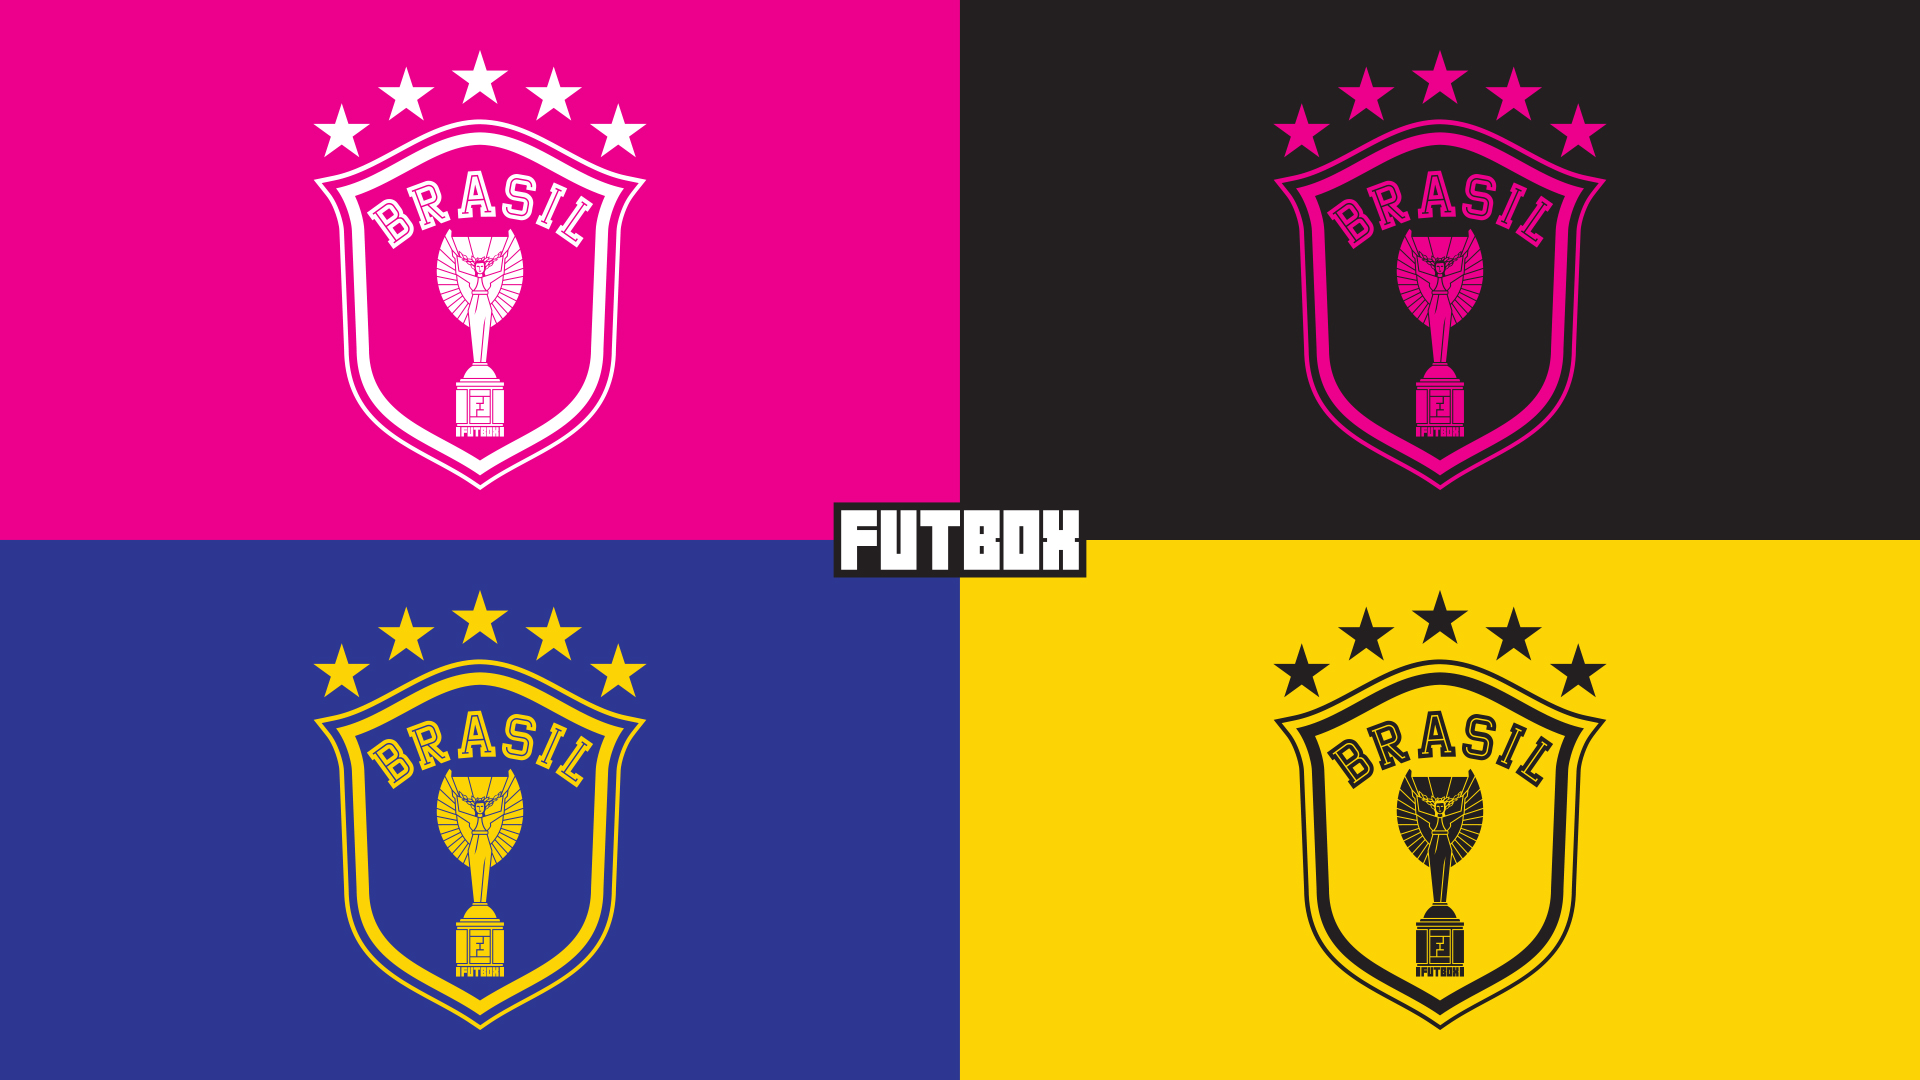 Design personalizado dos escudos da seleção.